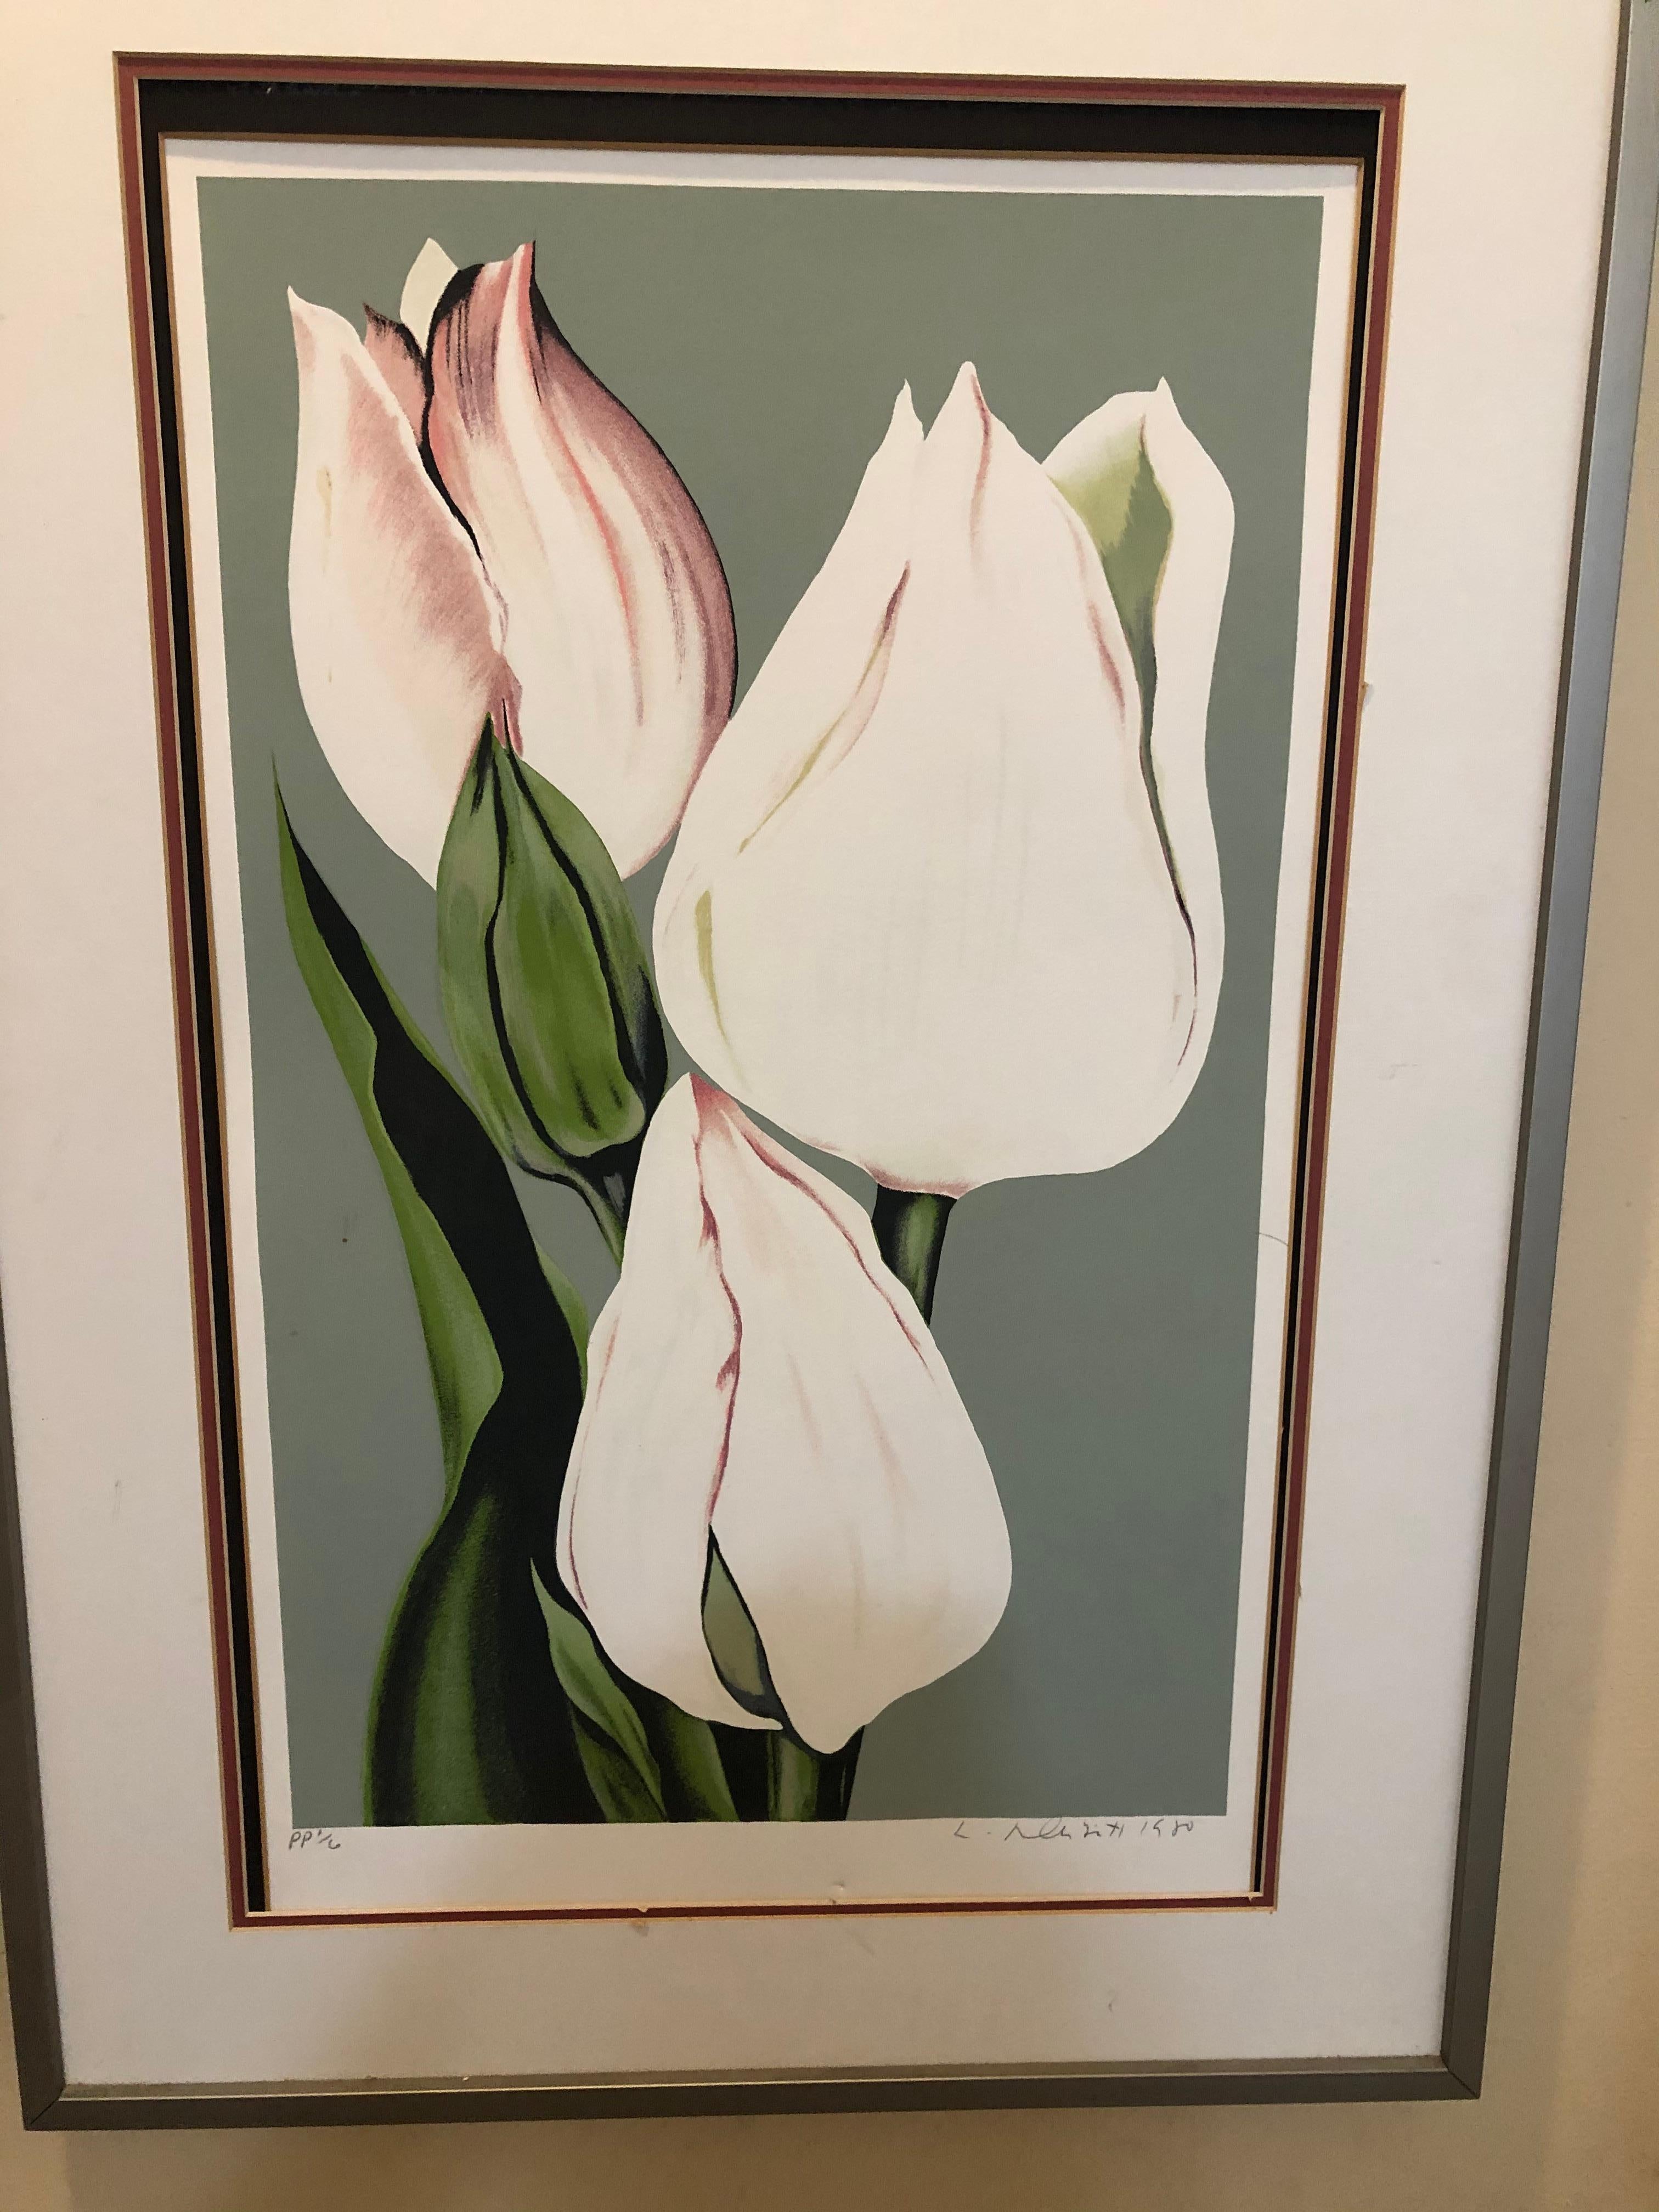 Lowell Nesbitt - Lowell Nesbitt 1980 Tulips Lithograph For Sale at 1stDibs